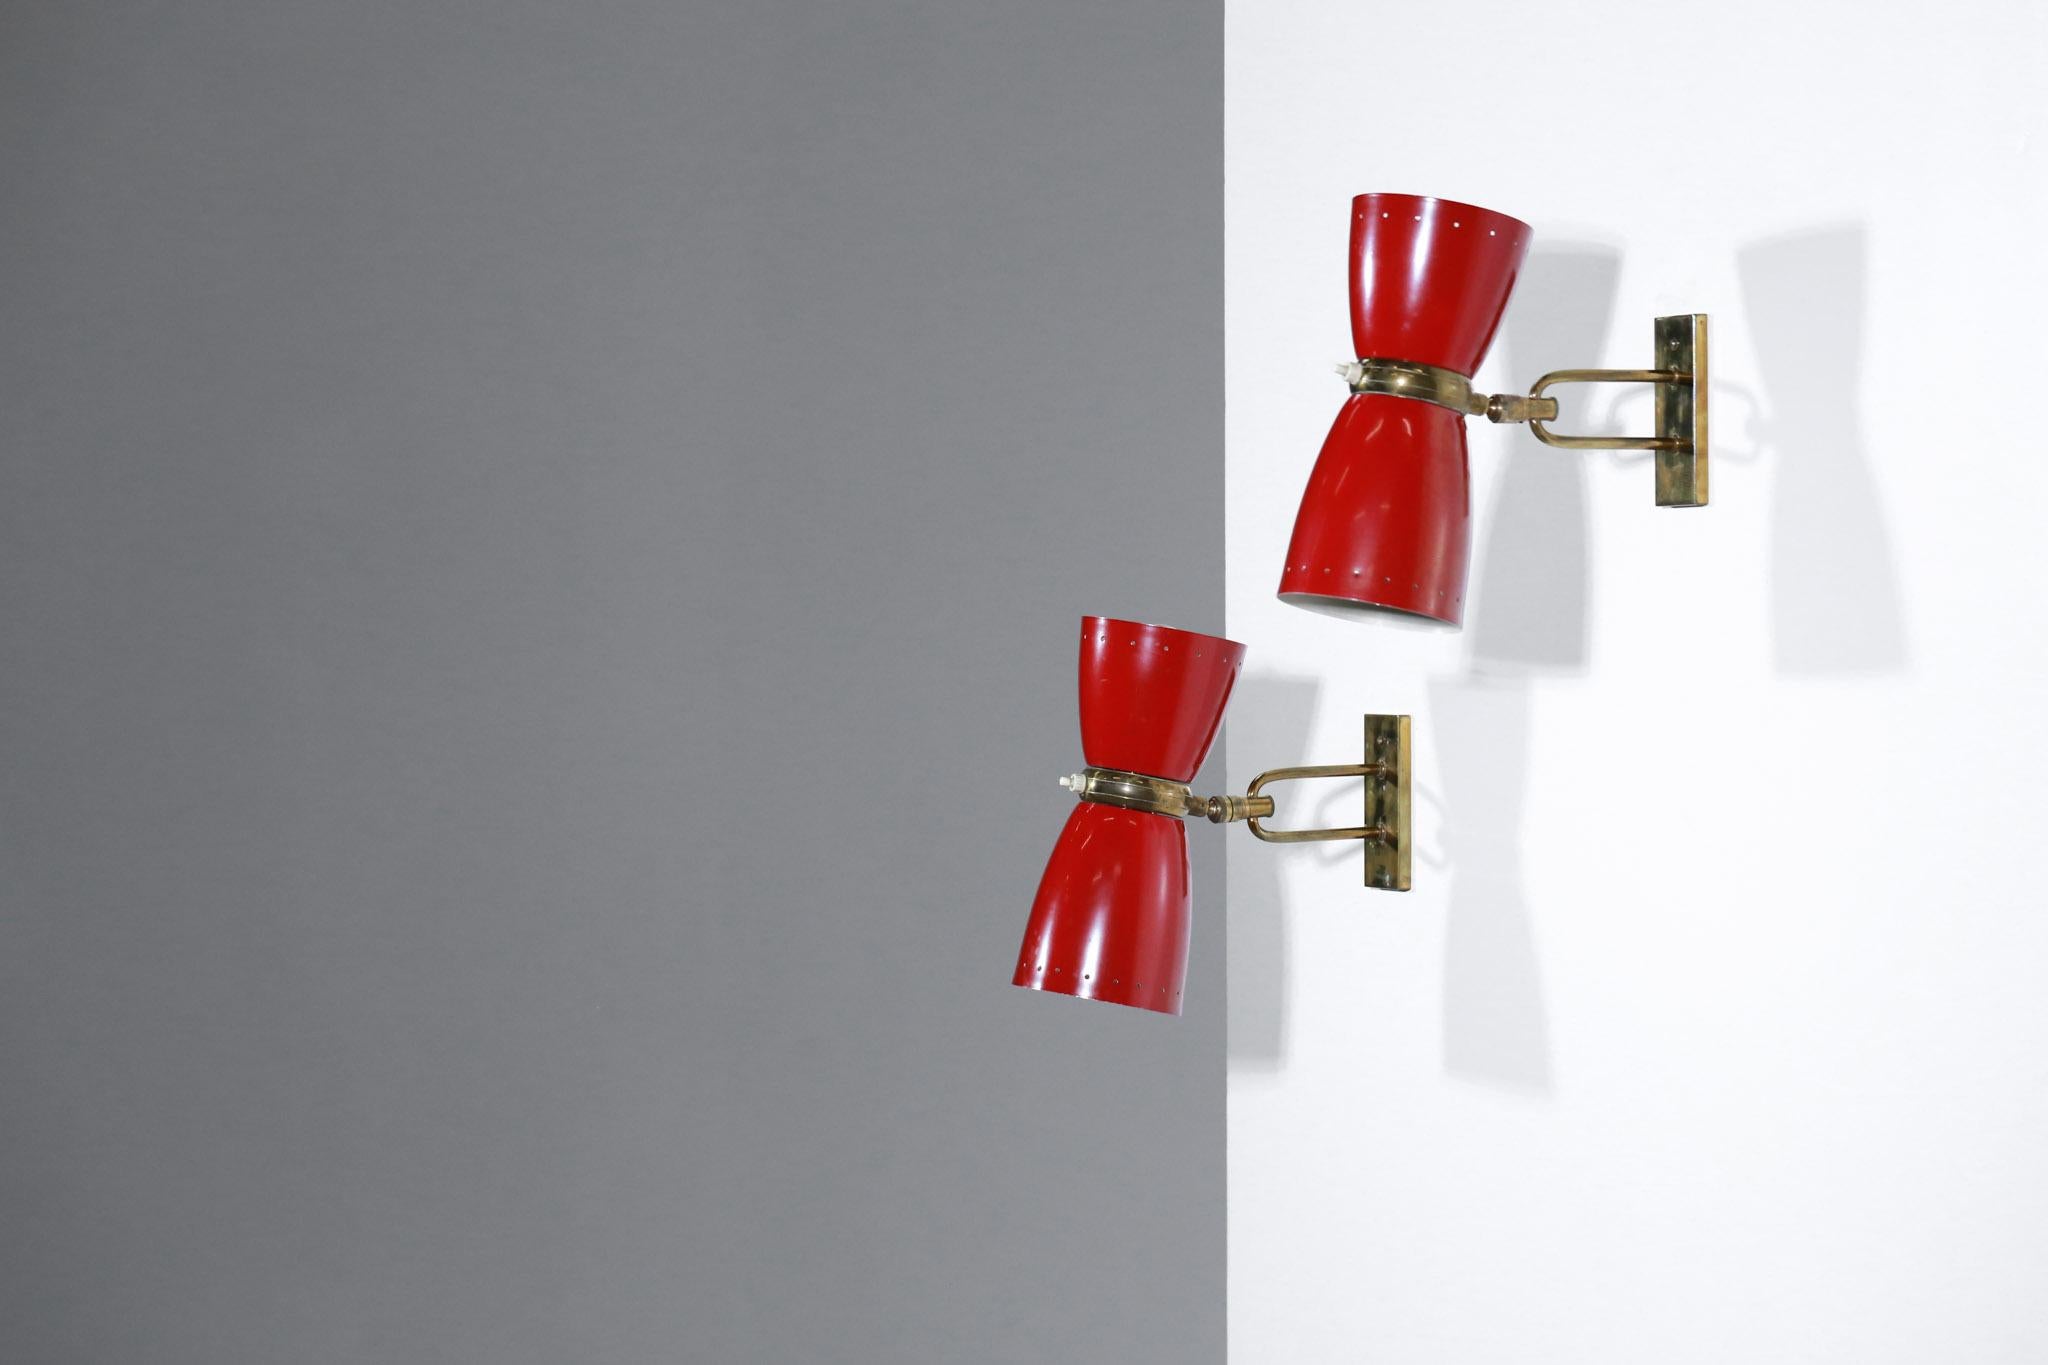 Paire d'appliques pivotantes des années 1950 dans le style du designer français Jean Boris Lacroix.
Structure en laiton massif et abat-jour en métal perforé laqué rouge, peinture d'origine.